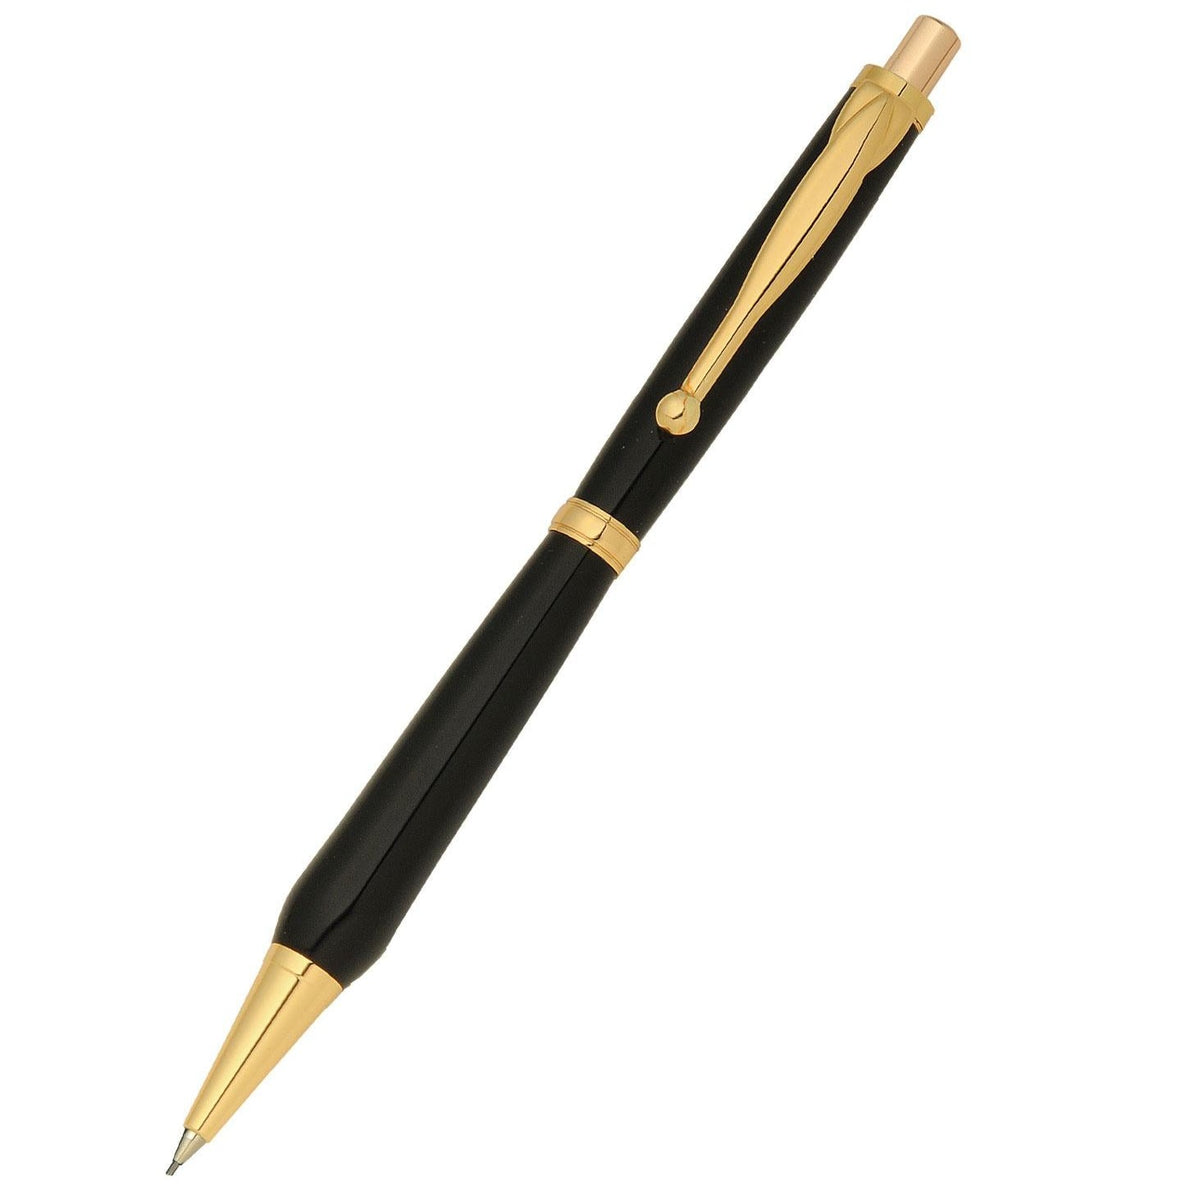 Funline Slimline Economy Pen Kit